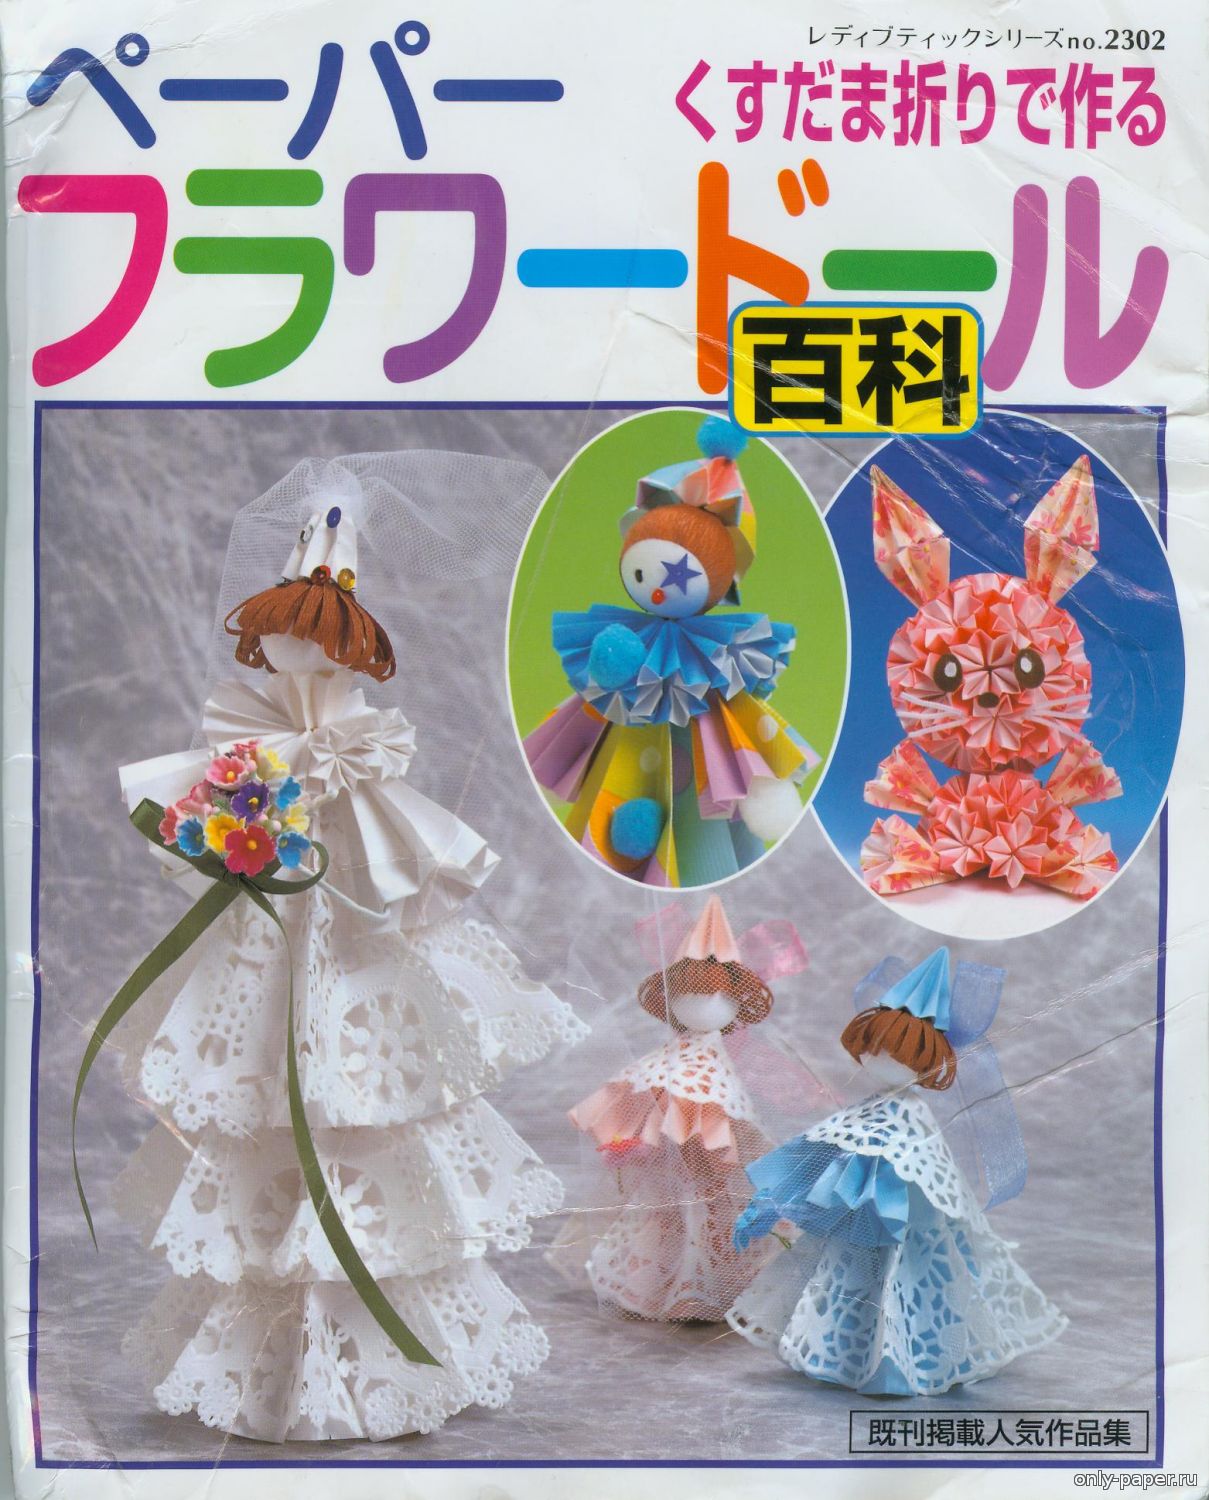 страница 4 | Куклы ручной работы Изображения – скачать бесплатно на Freepik